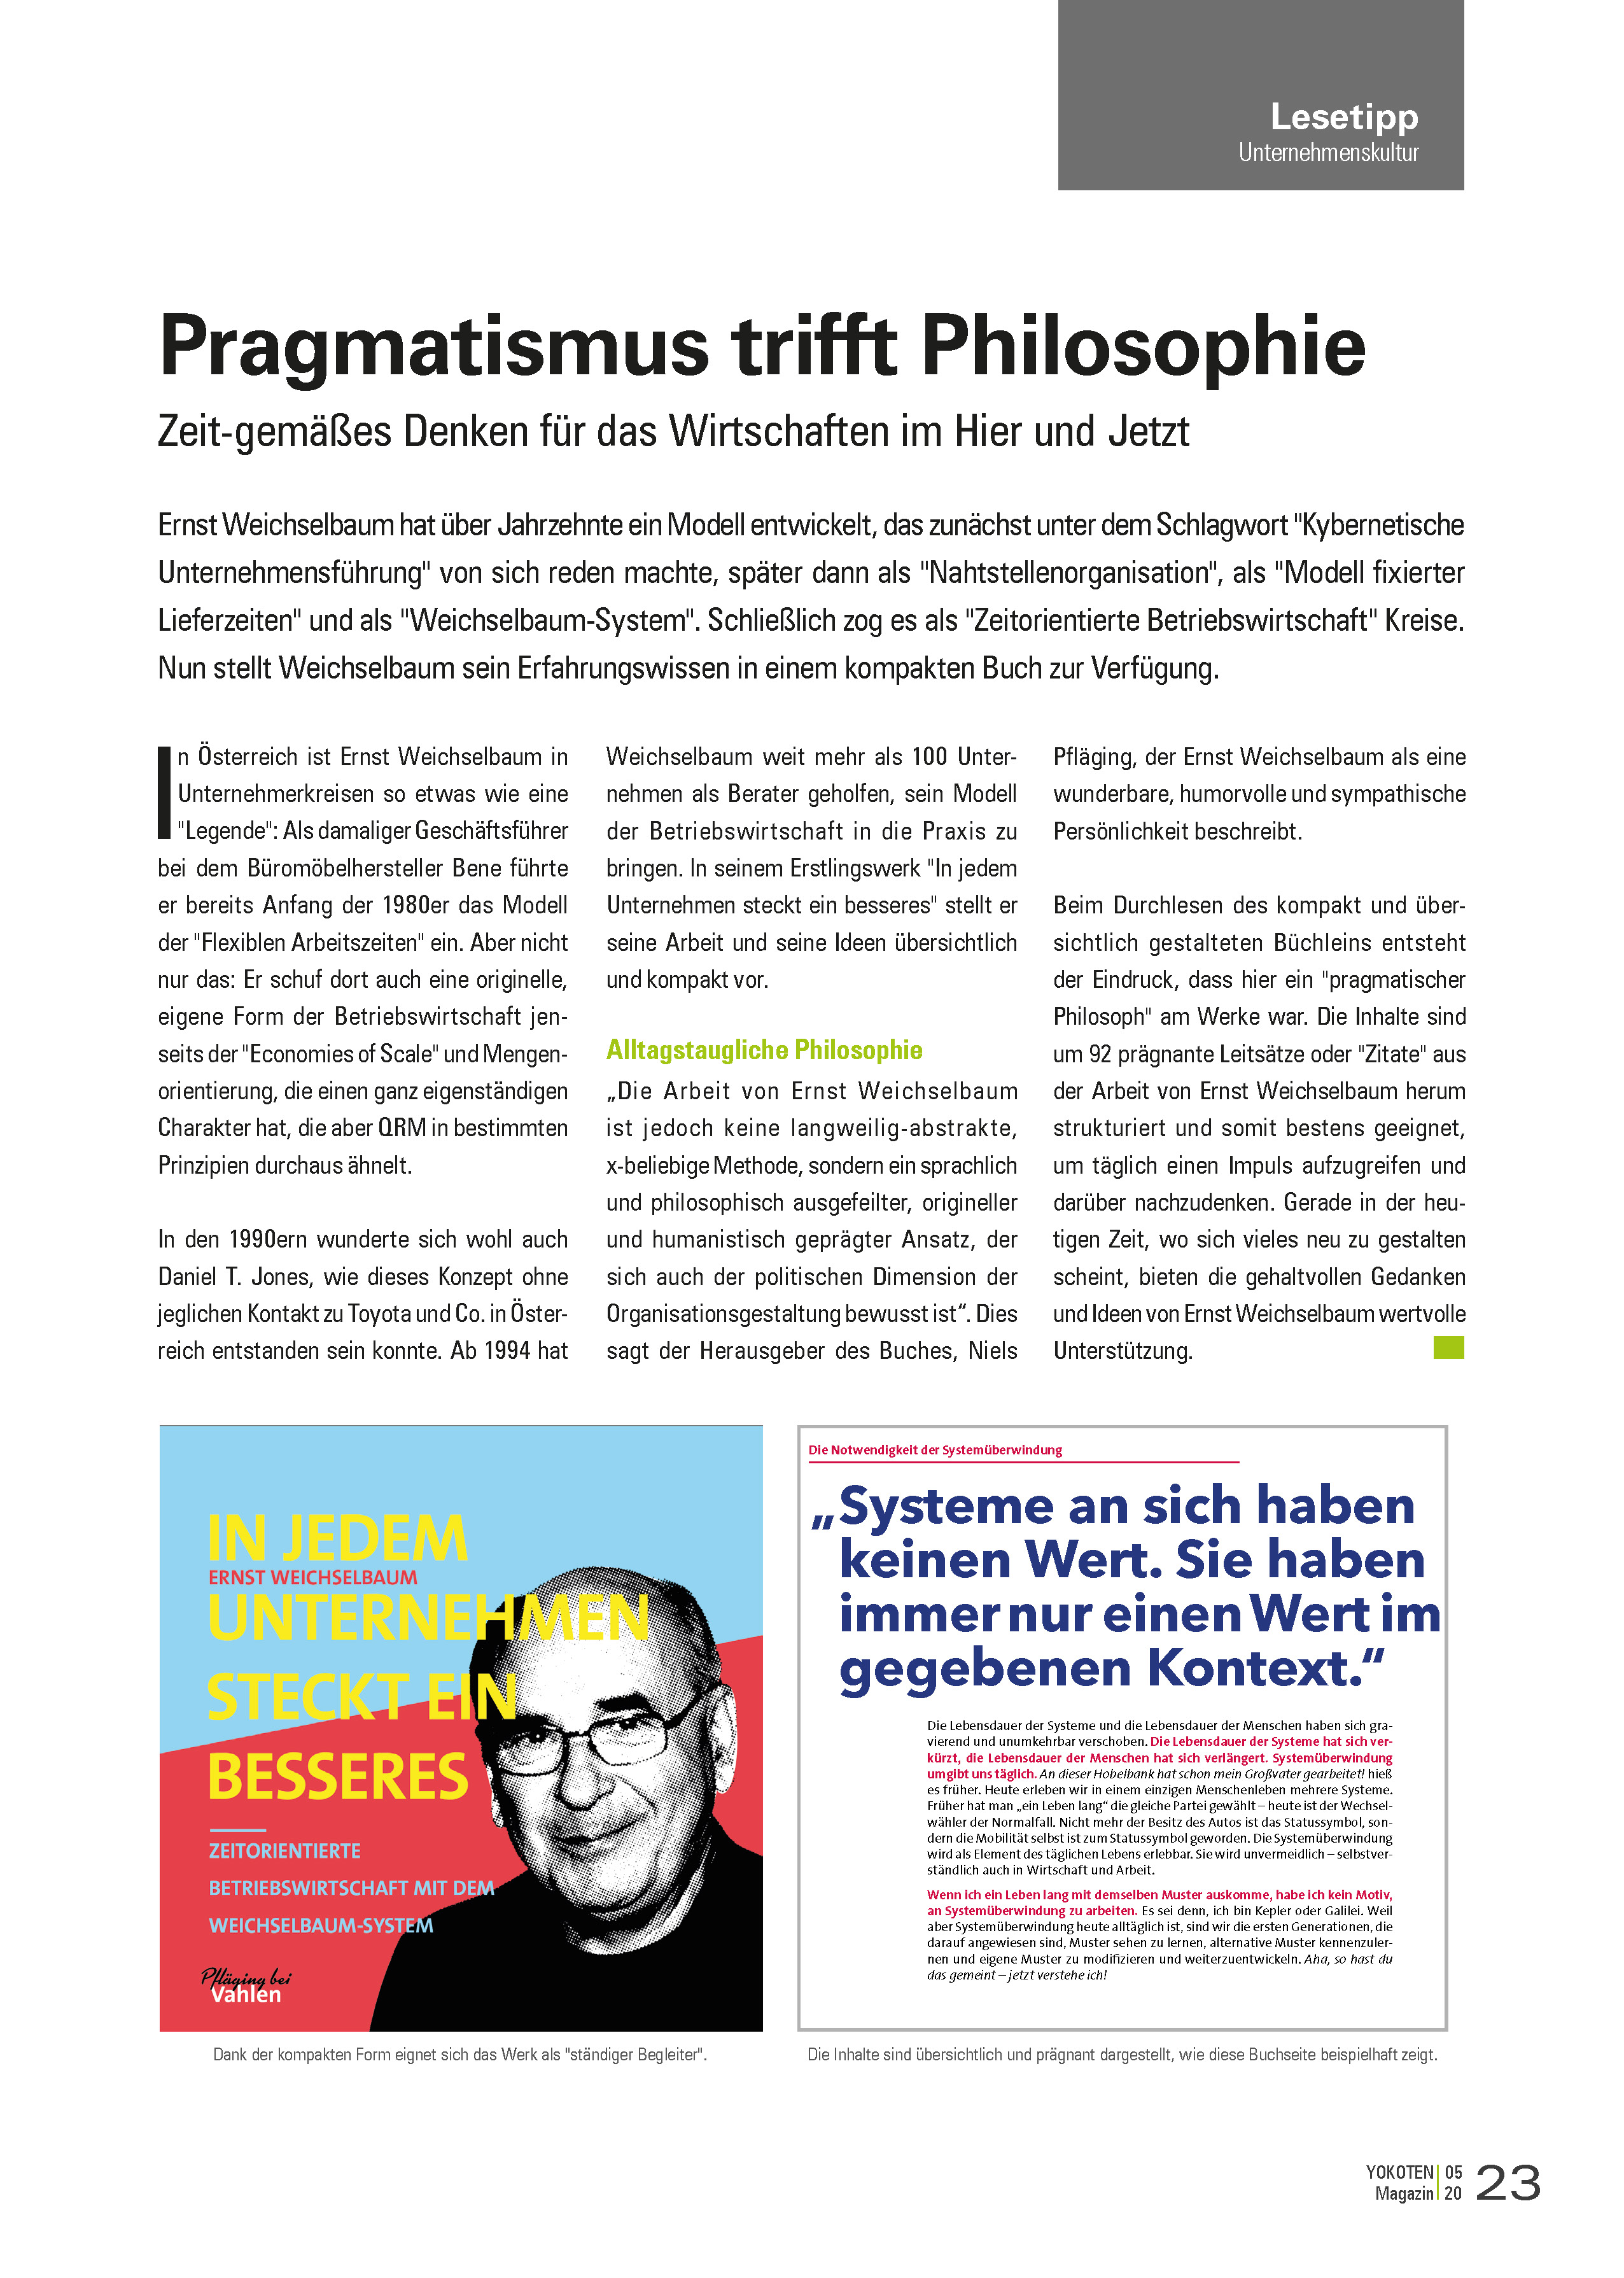 YOKOTEN-Artikel: Pragmatismus trifft Philosophie